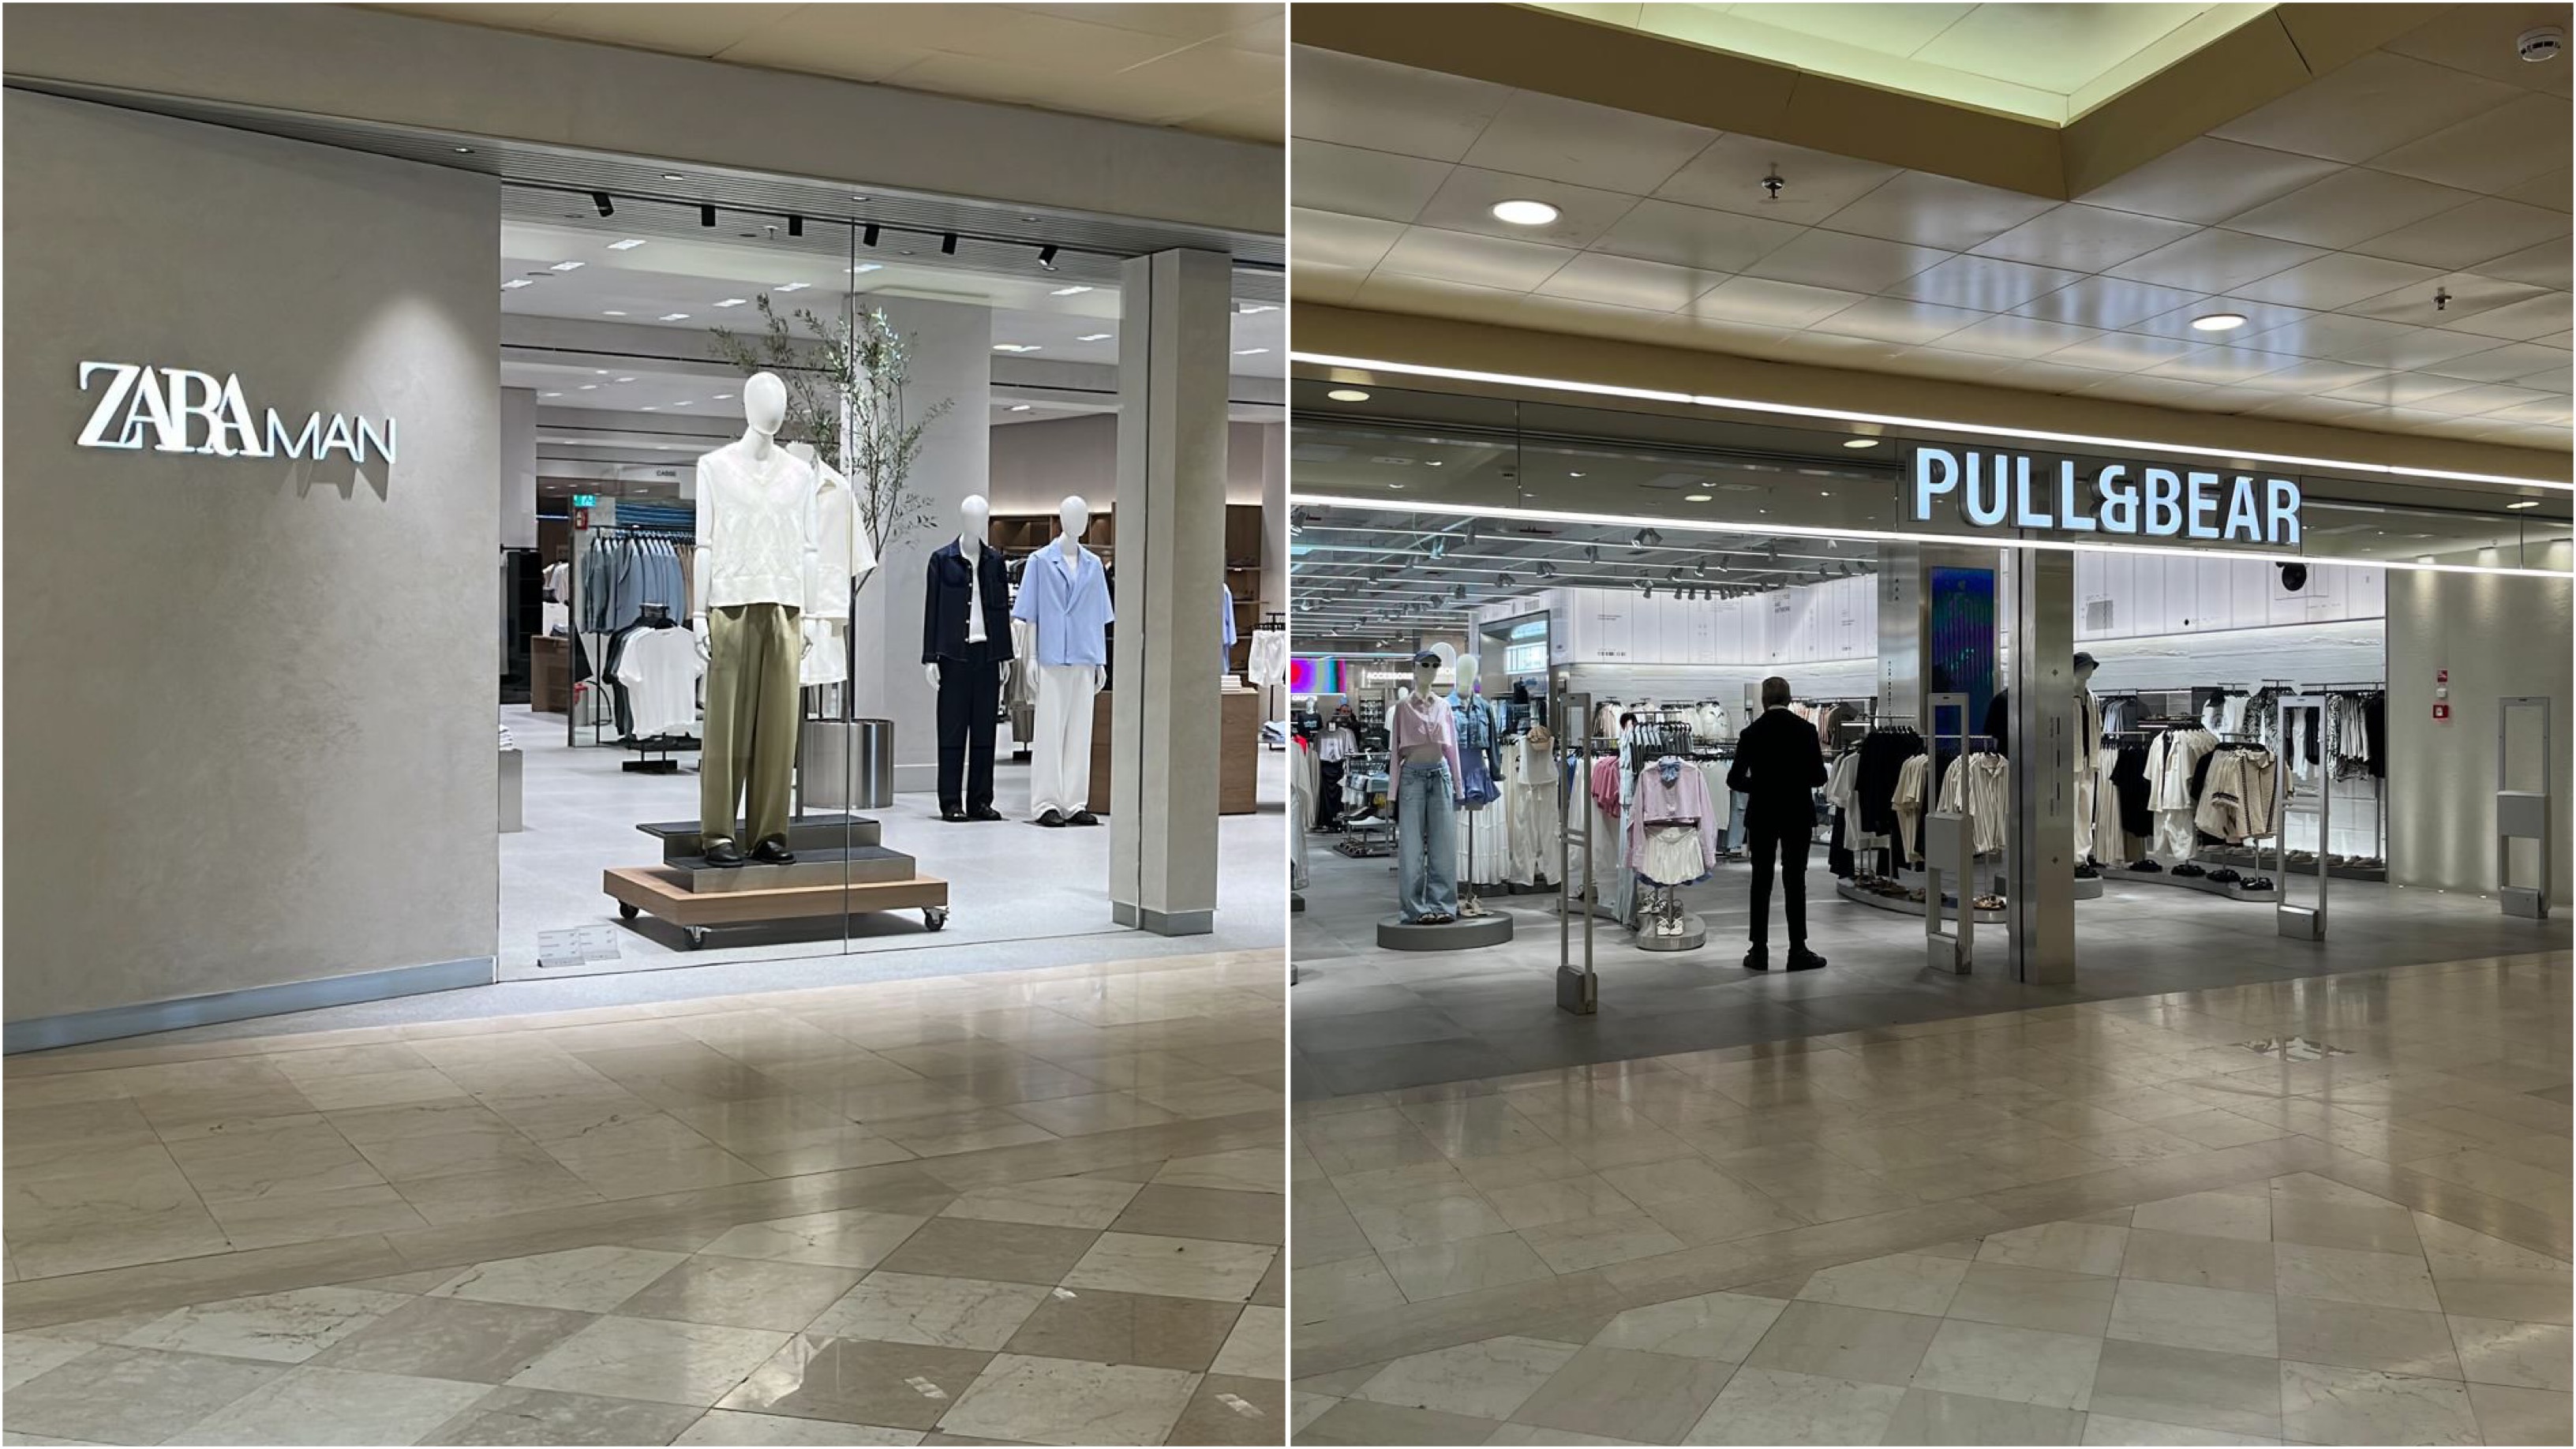 Olbia, aprono oggi i nuovi store Pull&Bear e Zara Man: ecco i dettagli